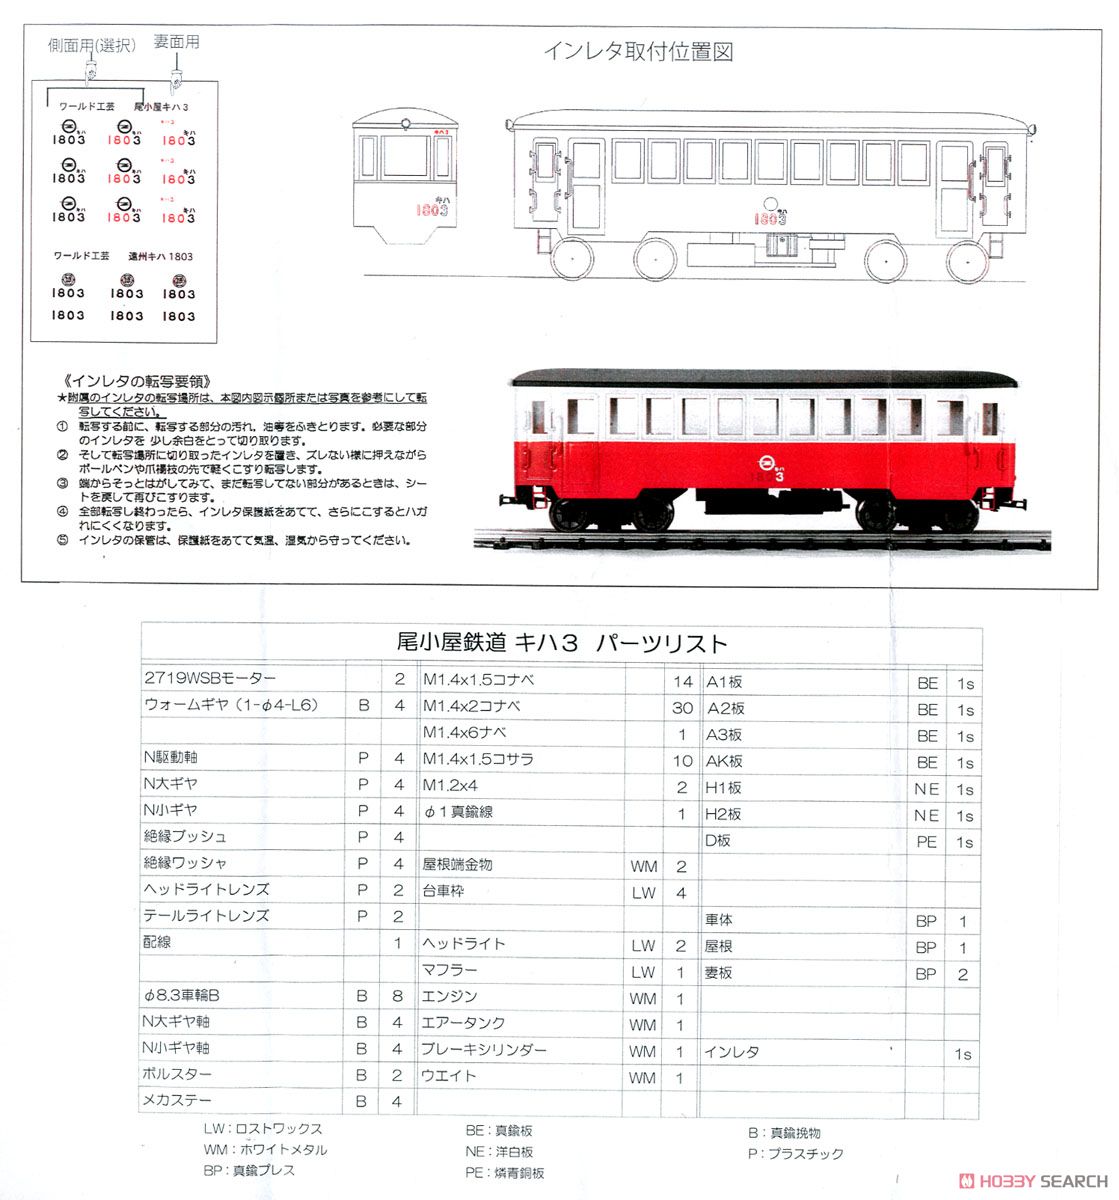 (HOナロー) 尾小屋鉄道 キハ3 気動車 (組み立てキット) (鉄道模型) 設計図3